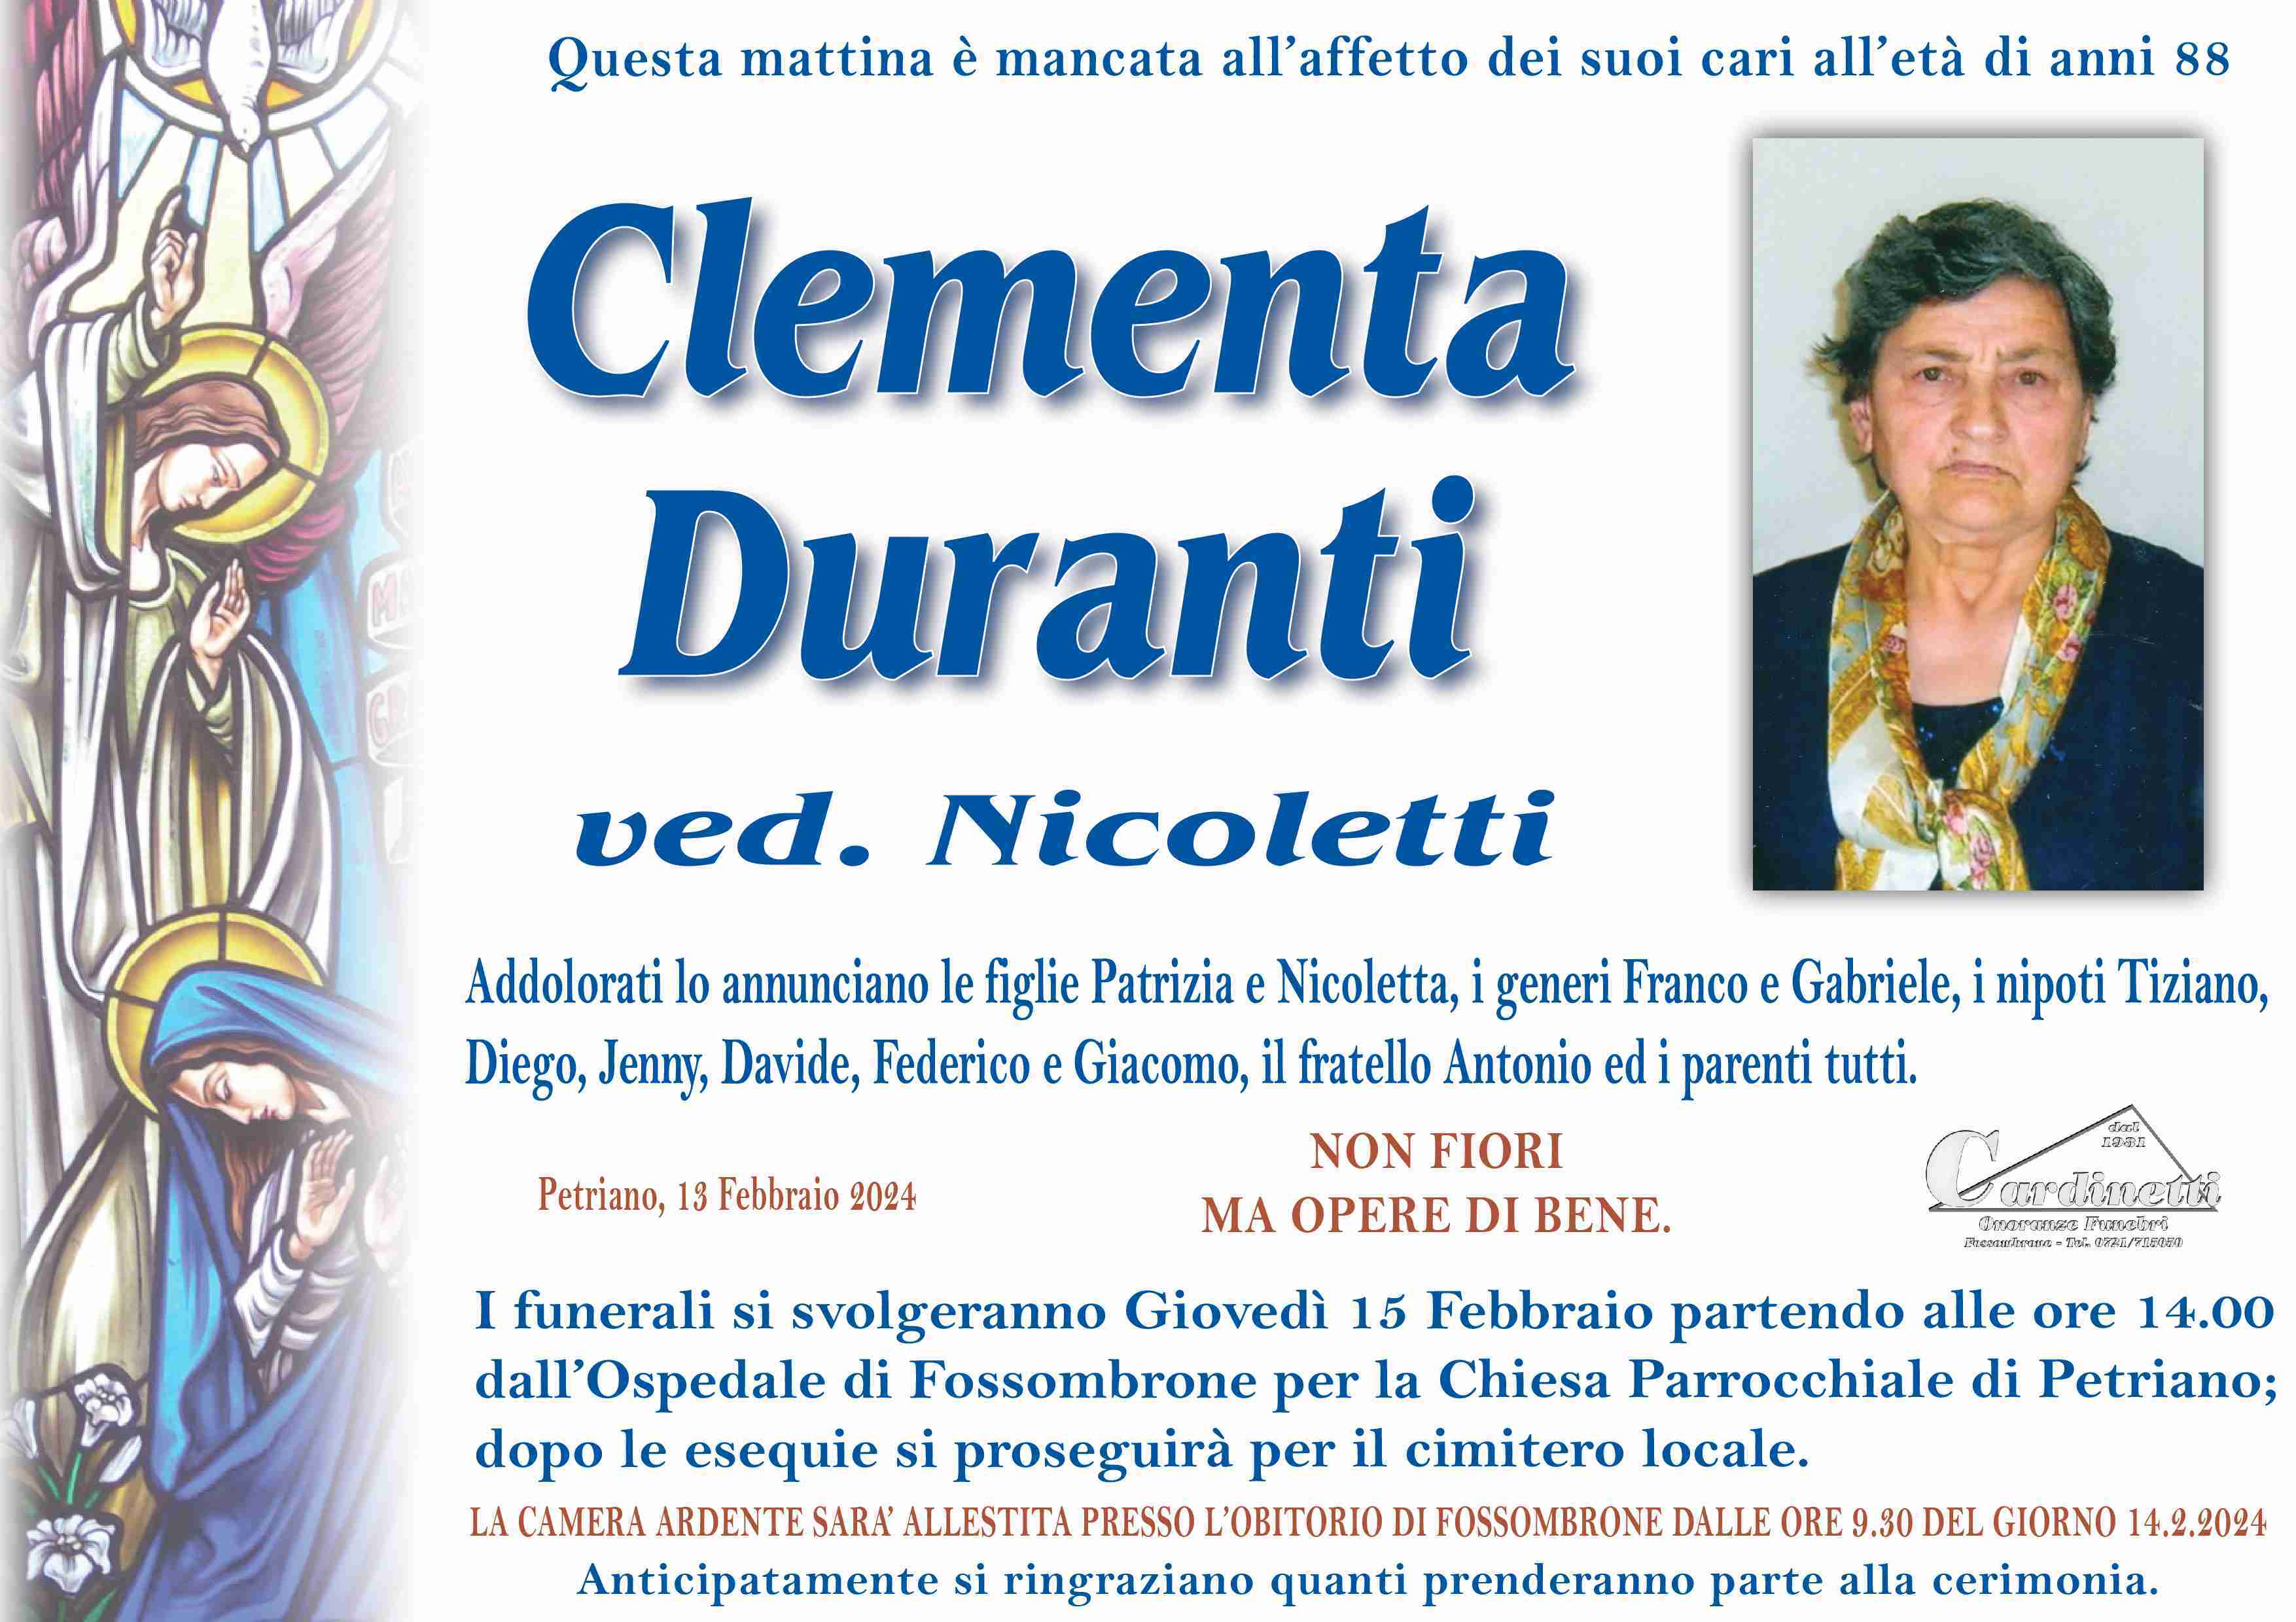 Clementa Duranti